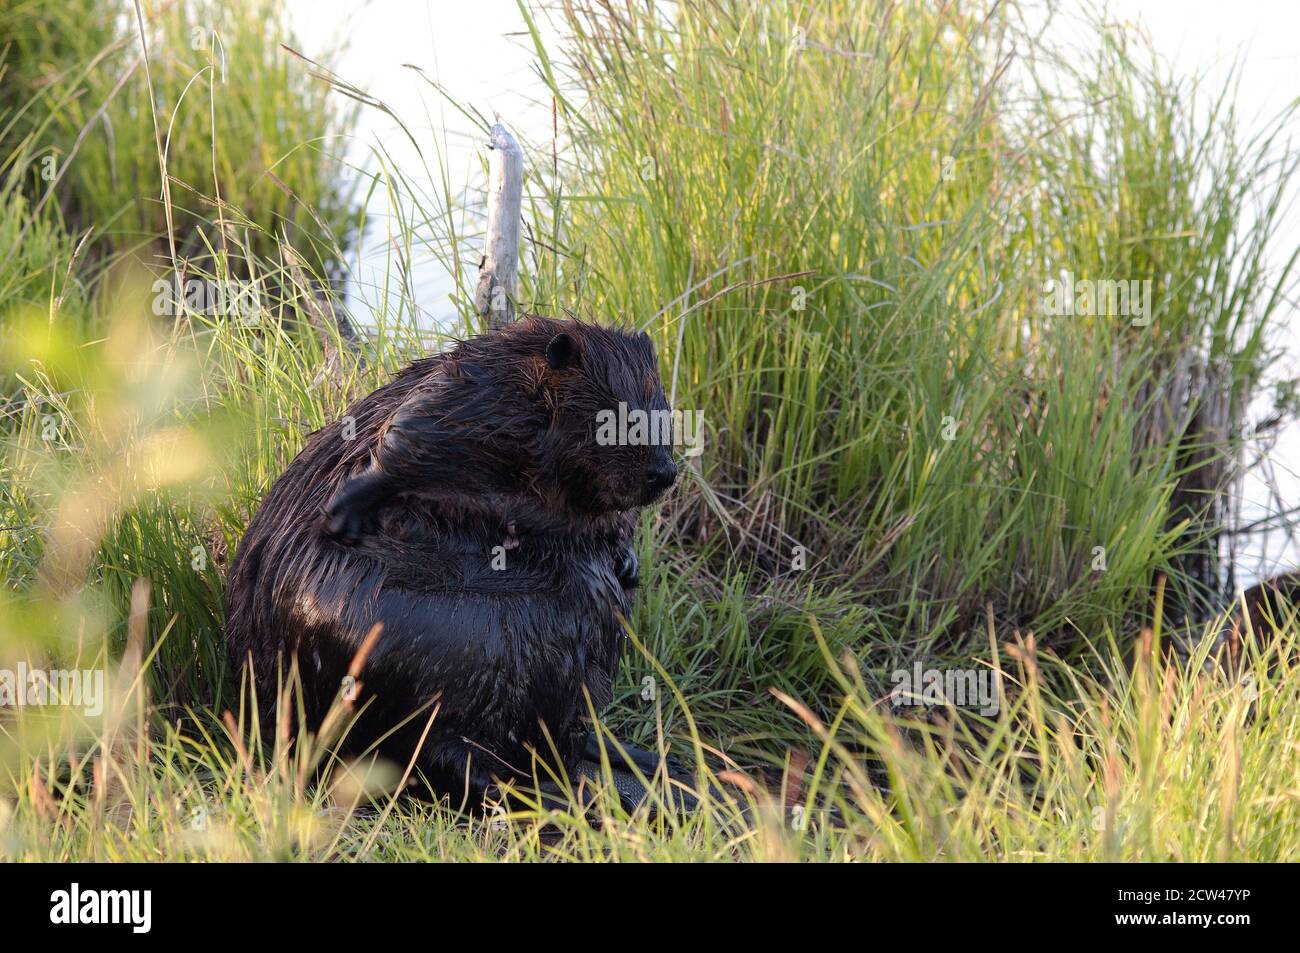 Beaver gros plan voir le profil toilettage et assis sur l'herbe près de l'étang montrant le corps, la tête, les yeux. Oreilles, queue, fourrure, fourrure brune dans son environnement an Banque D'Images